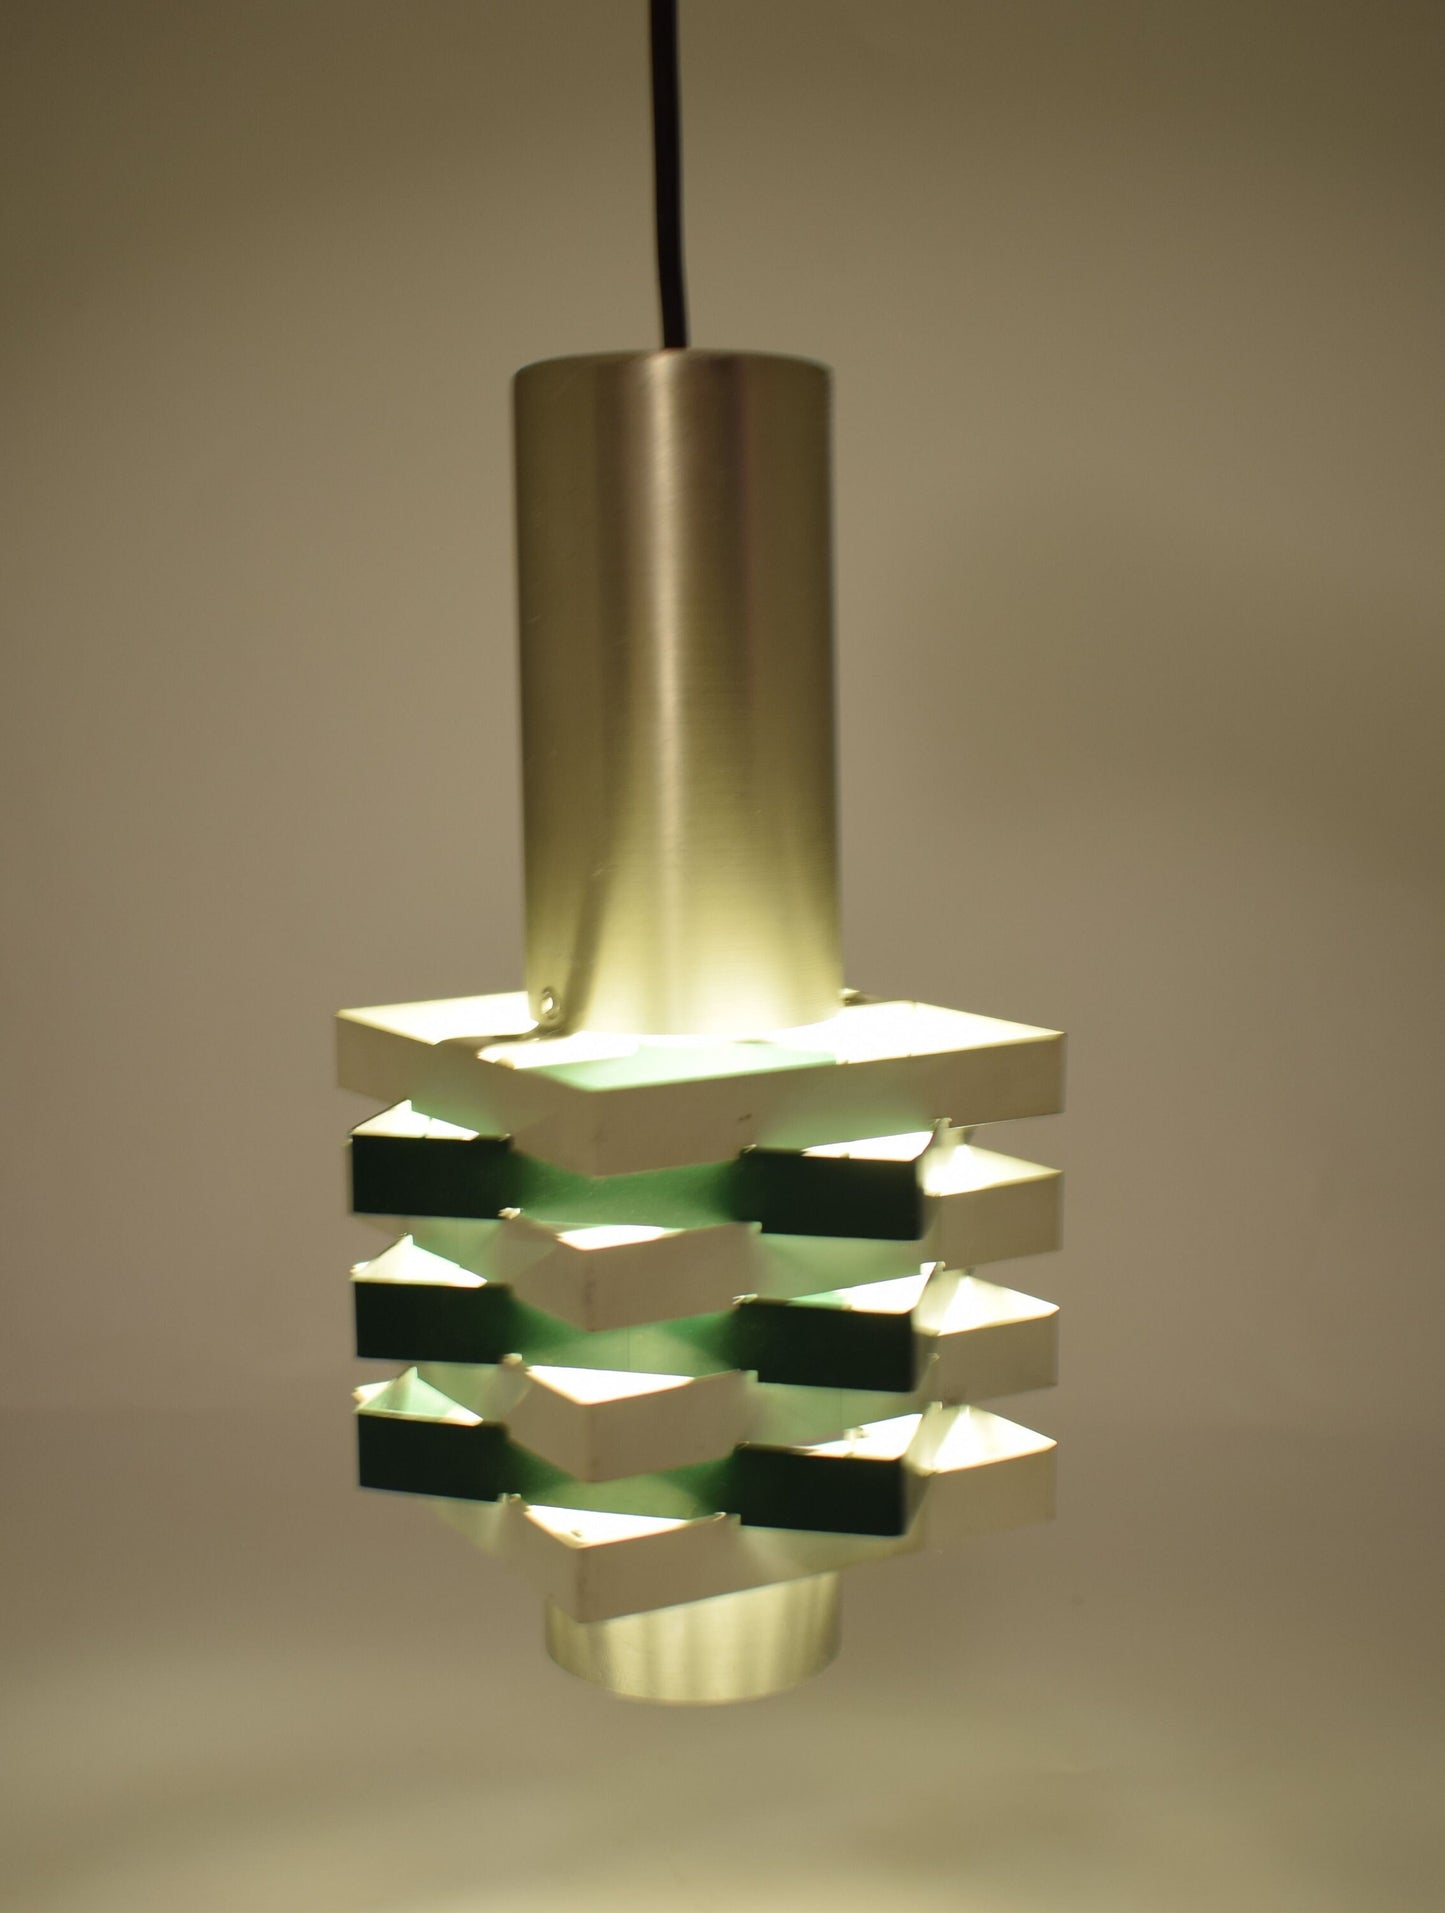 Anvia hanglamp, hanglamp van JJM Hoogervorst voor Aniva Holland